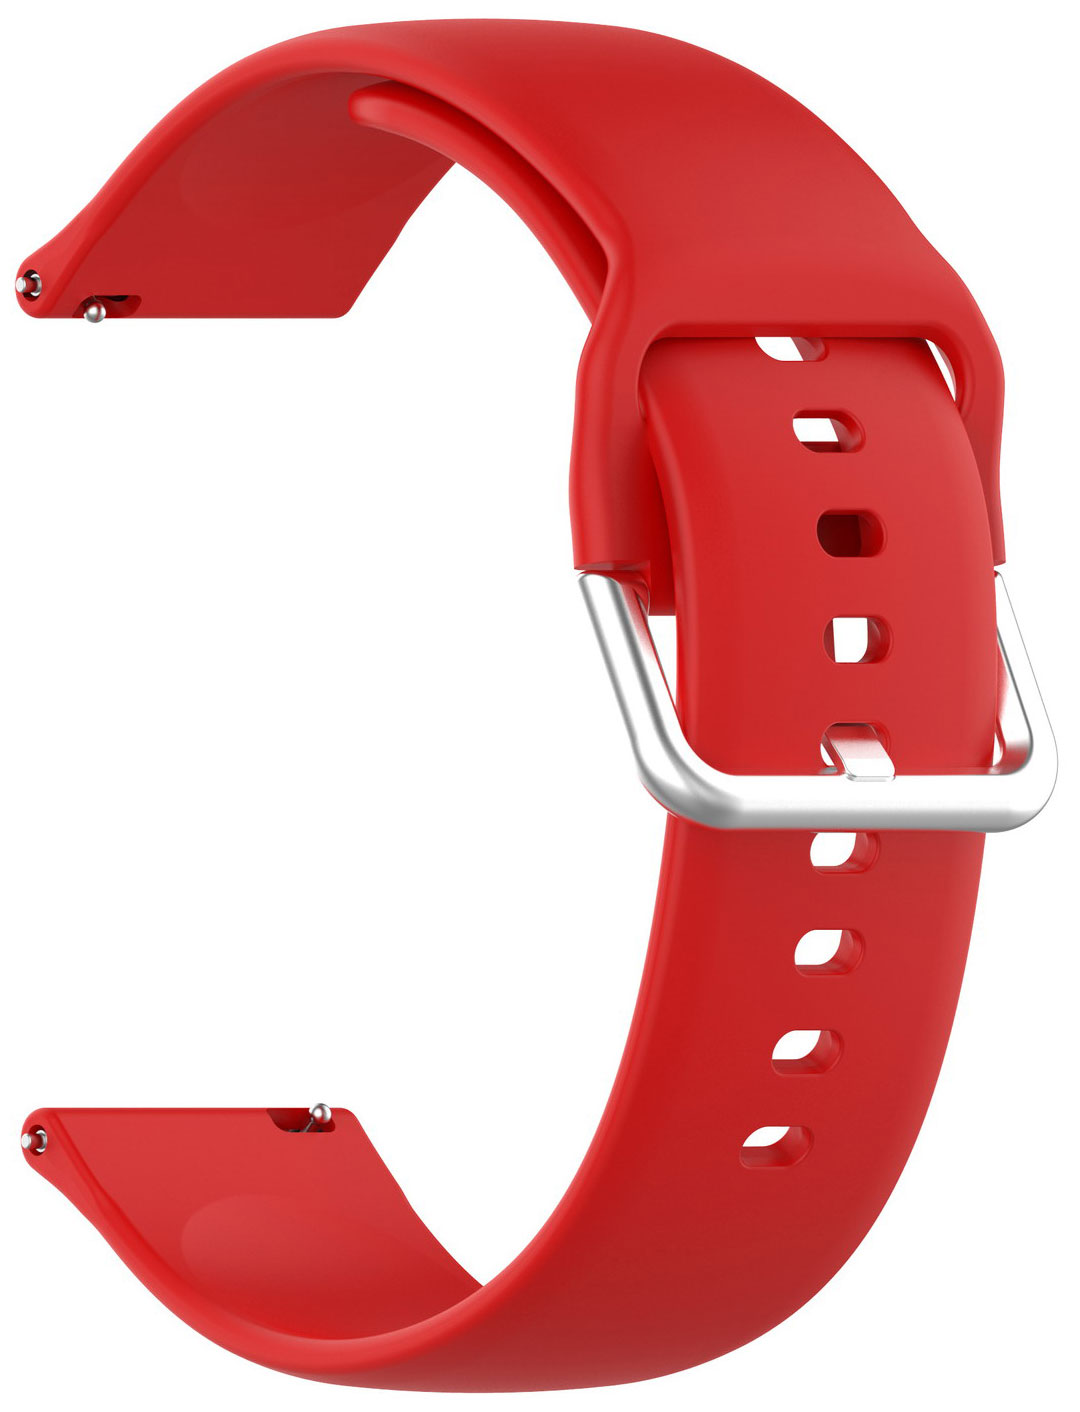 Ремешок для смарт-часов Red Line универсальный силиконовый, 22 mm, красный УТ000025252 универсальный силиконовый ремешок для часов 22 mm lyambda alioth ds gs 03 22 rd red black